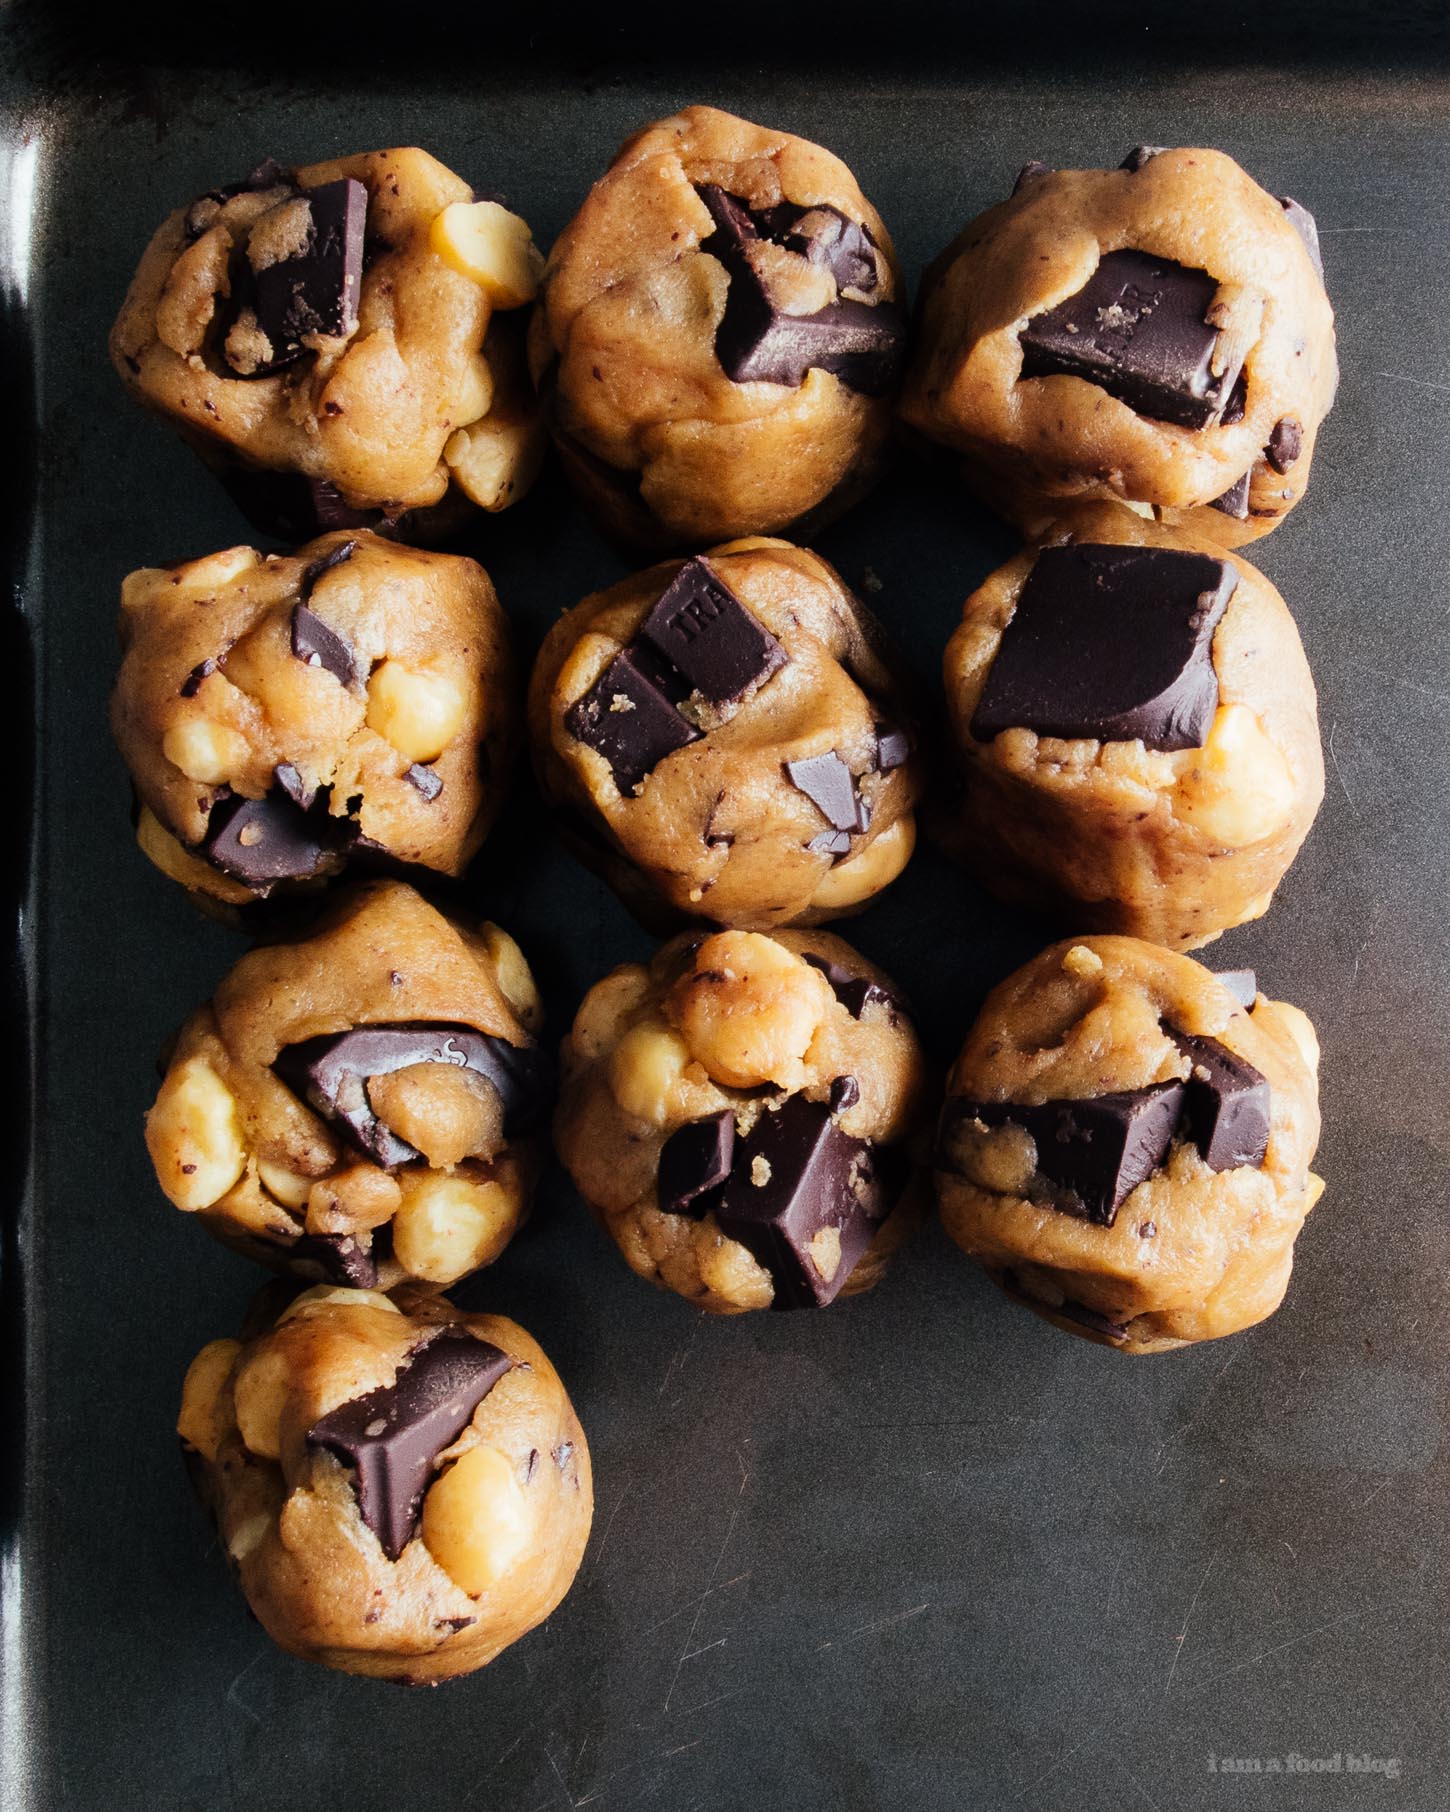 Receta de galletas con chispas de chocolate negro y mantequilla marrón suave de nuez de macadamia  www.iamafoodblog.com